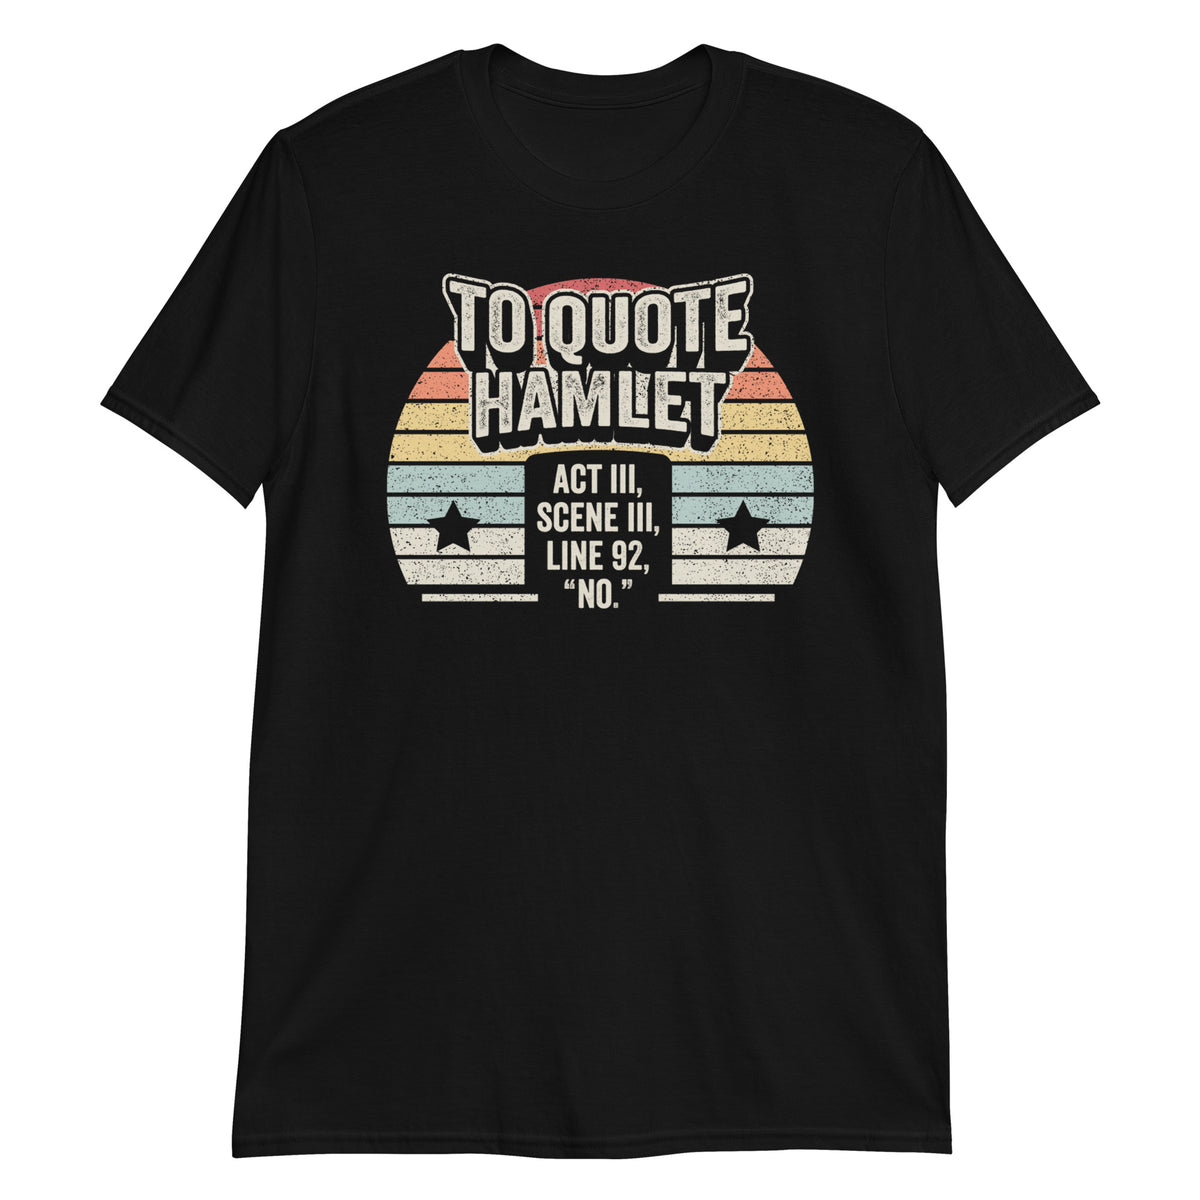 To Quote Hamlet Act III,SceneIII,Line 92 T-Shirt